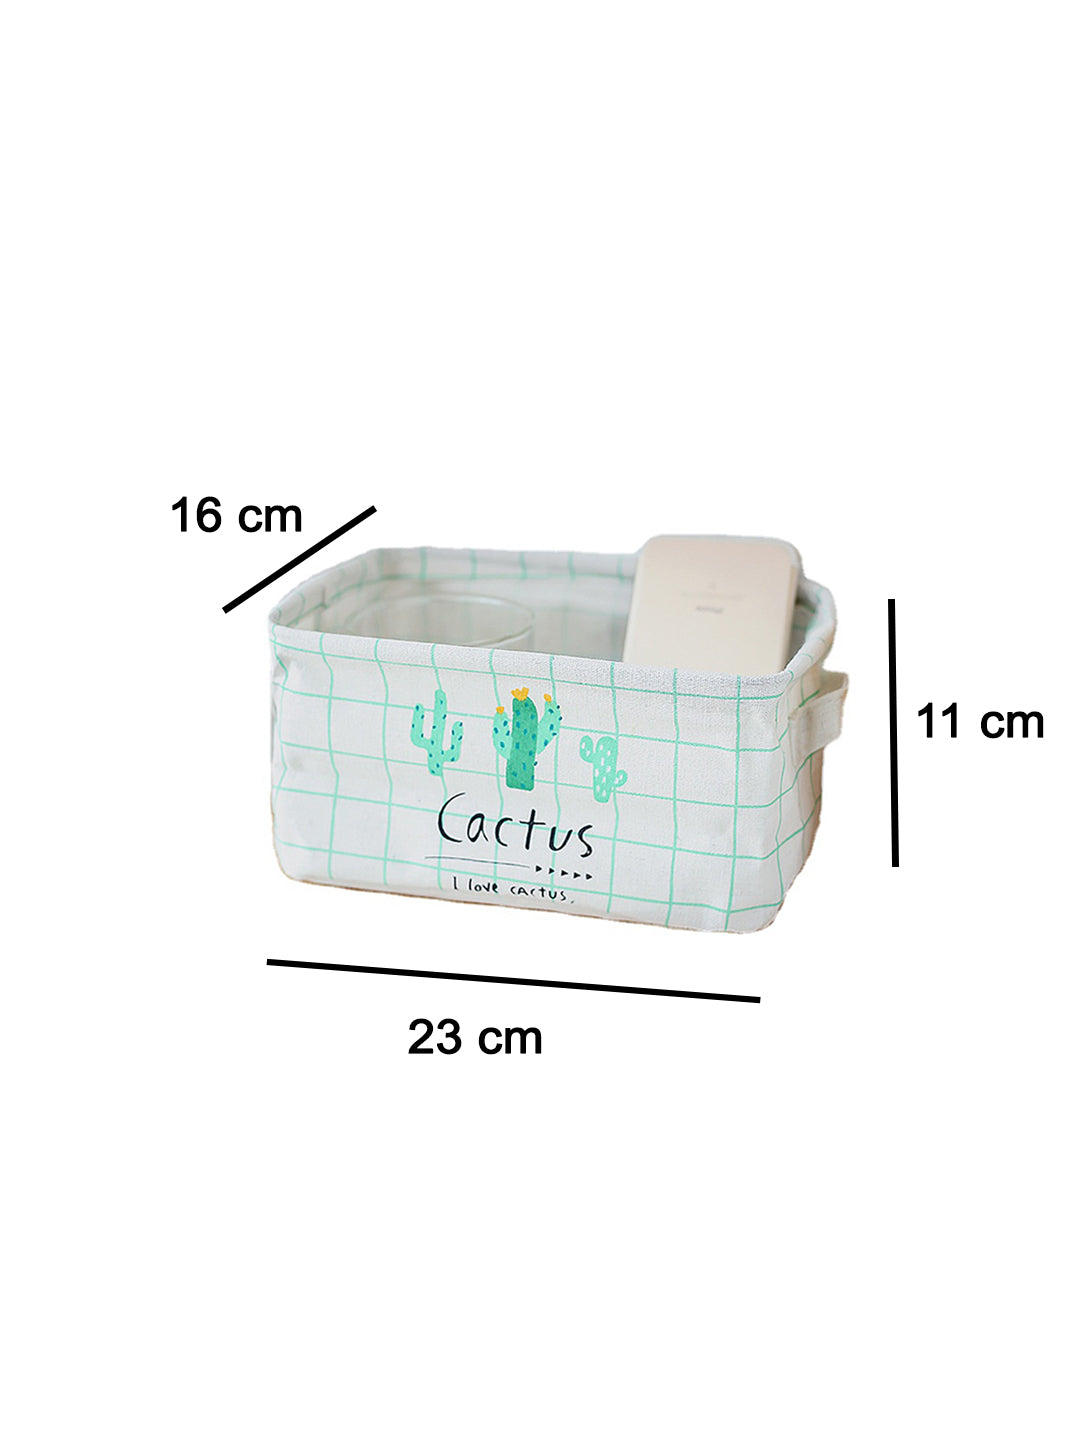 VON CASA Canvas Fabric Storage Bin With Handles - White